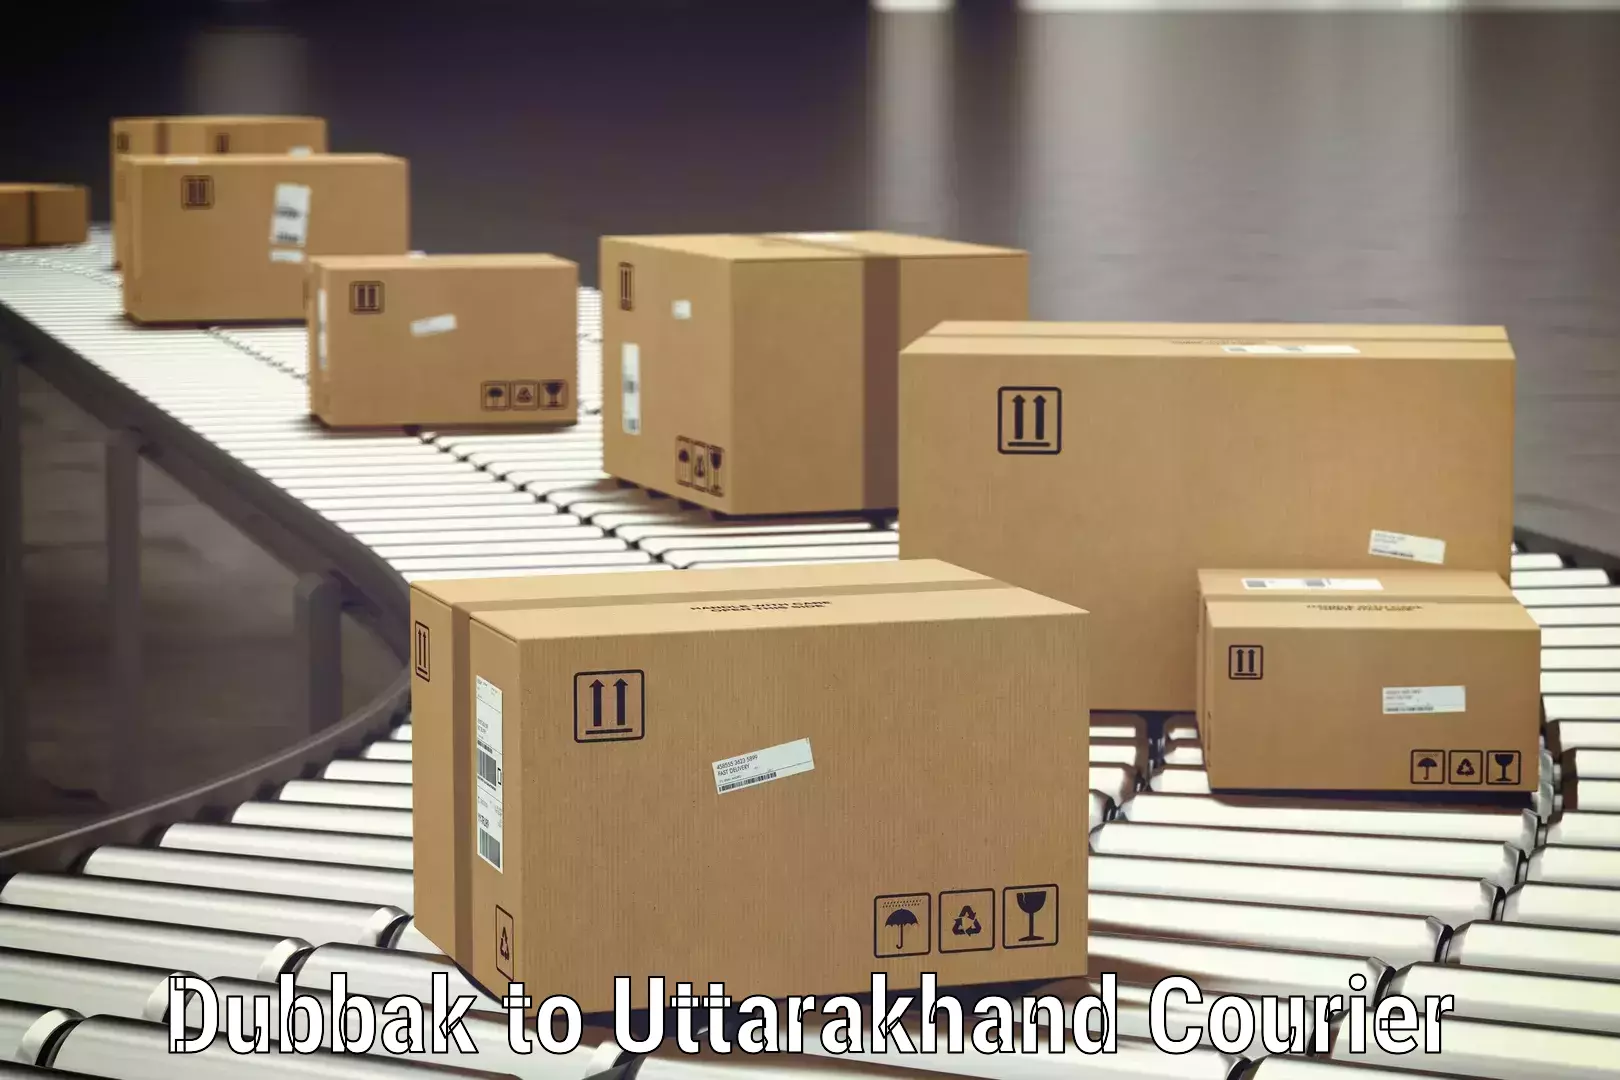 Luggage transport solutions in Dubbak to Srinagar Pauri Garhwal